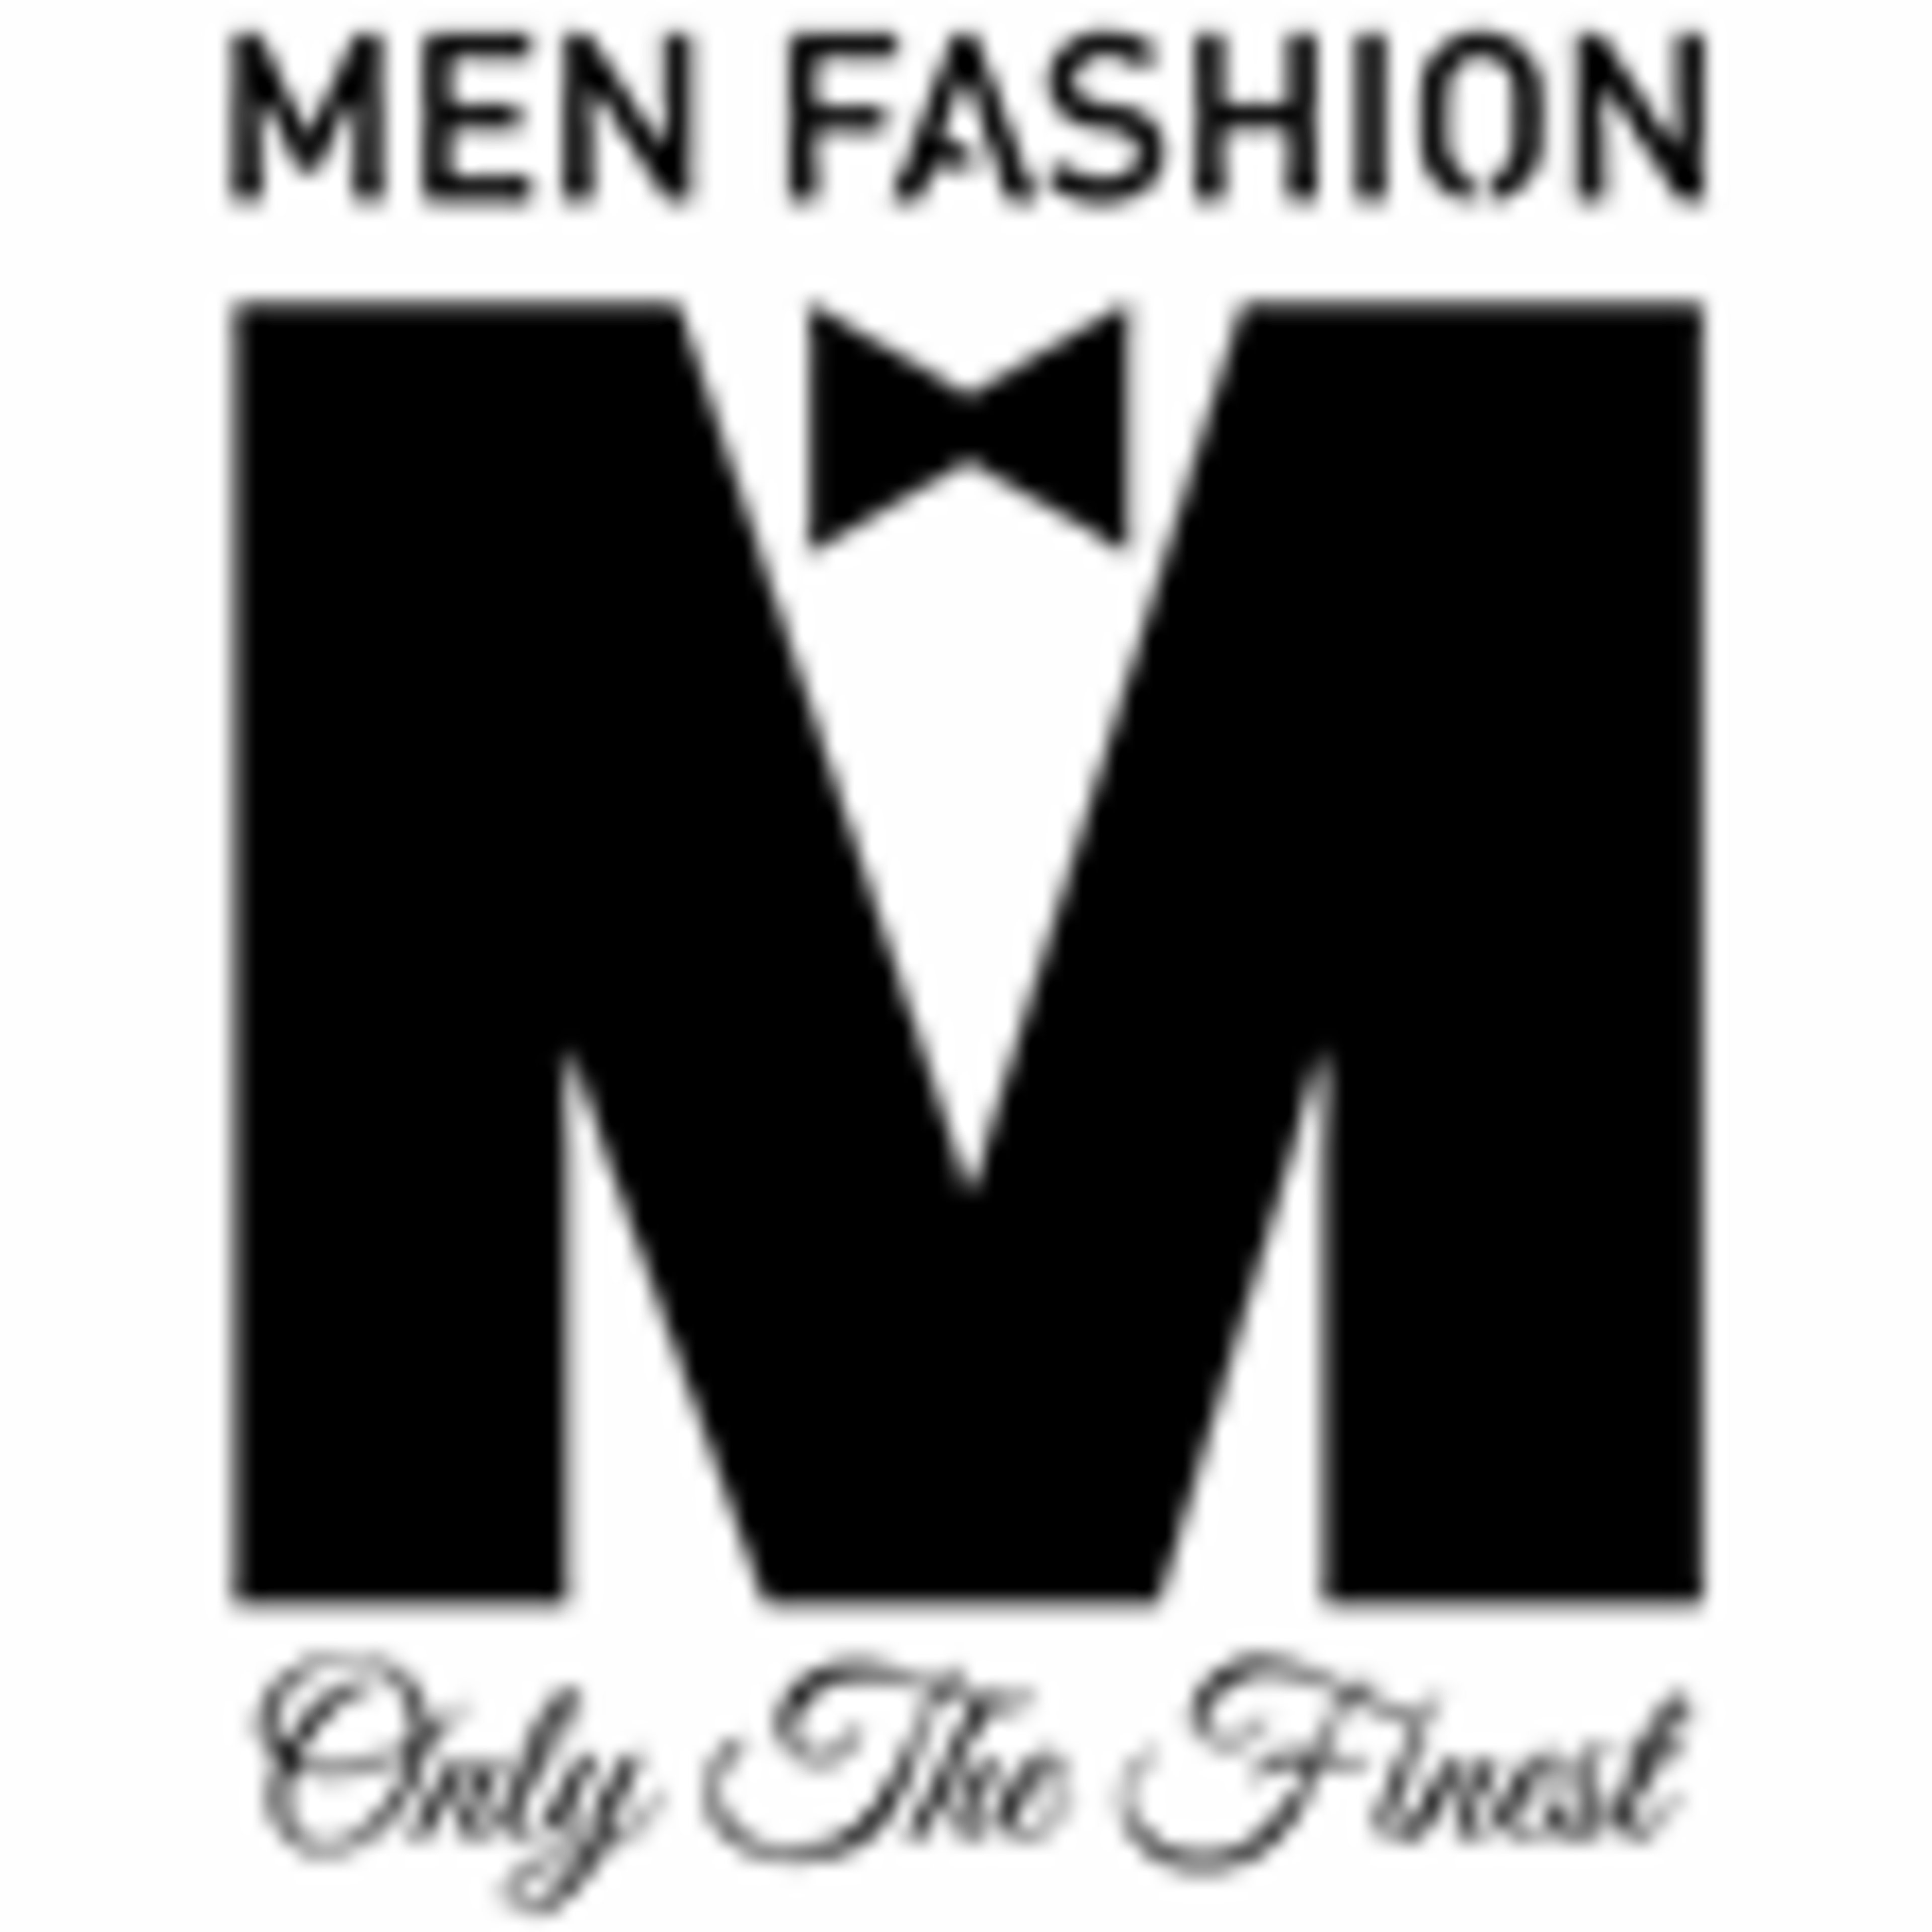 Men Fashion Code